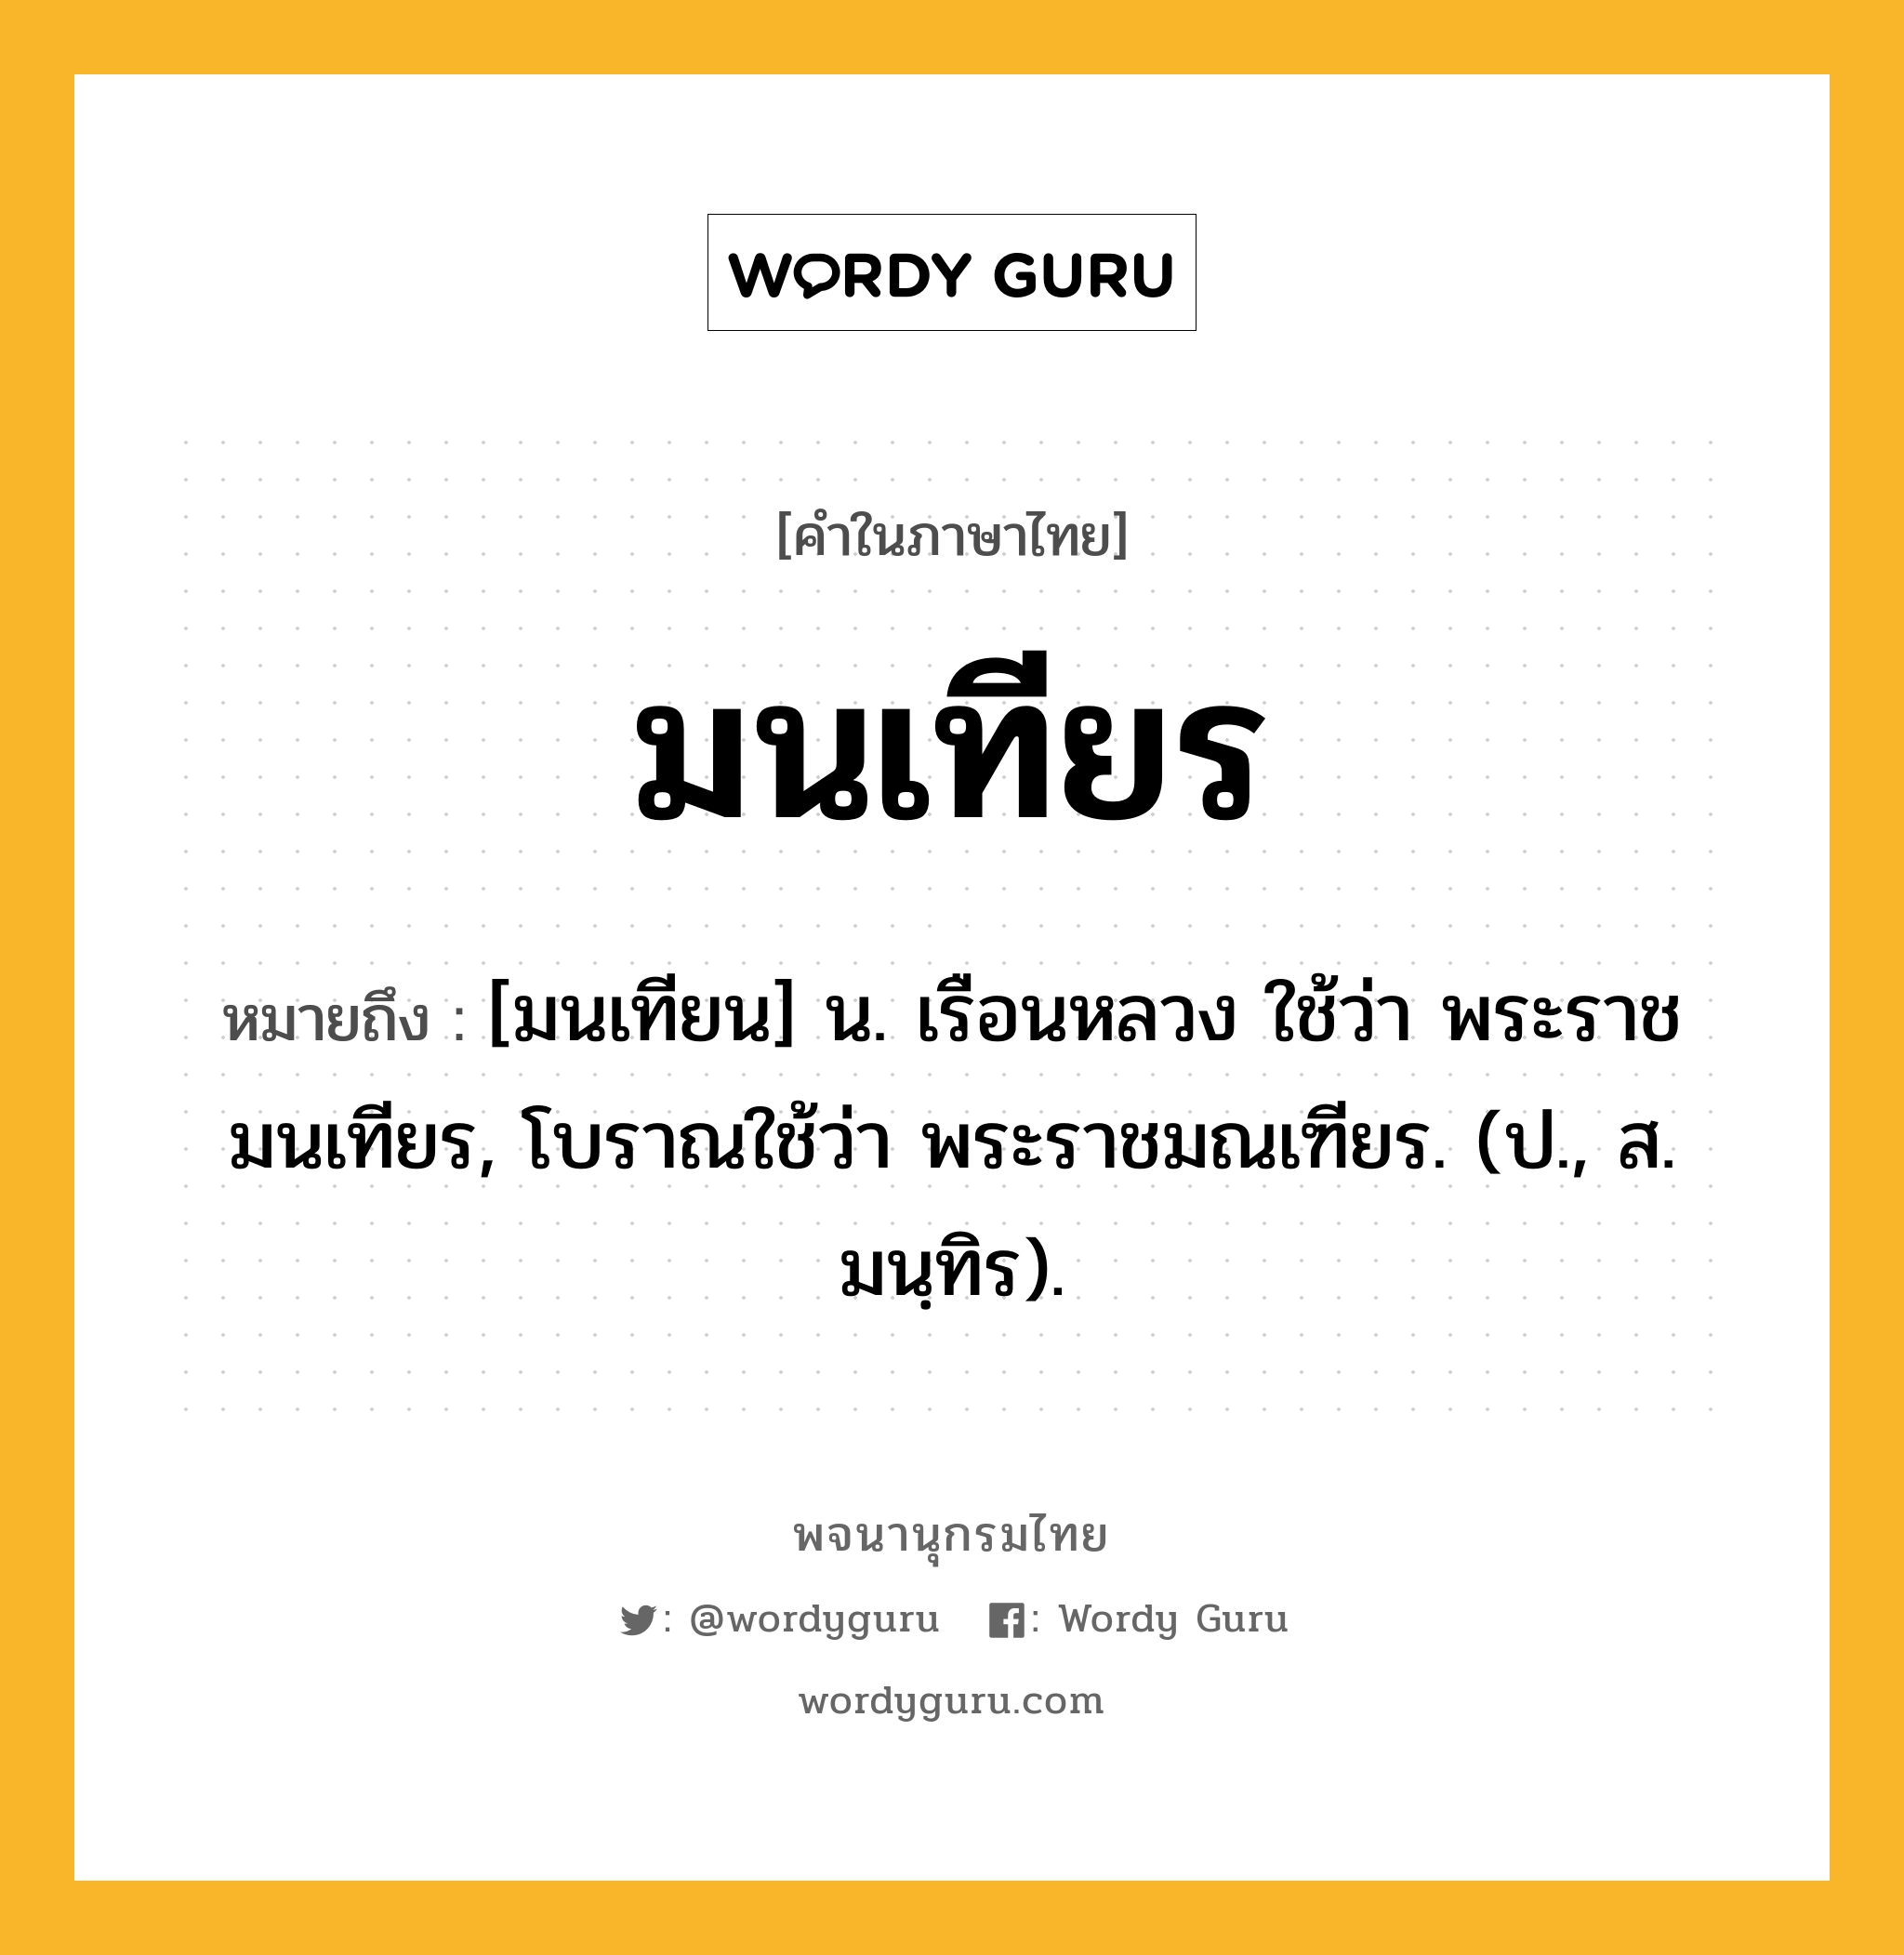 มนเทียร ความหมาย หมายถึงอะไร?, คำในภาษาไทย มนเทียร หมายถึง [มนเทียน] น. เรือนหลวง ใช้ว่า พระราชมนเทียร, โบราณใช้ว่า พระราชมณเฑียร. (ป., ส. มนฺทิร).